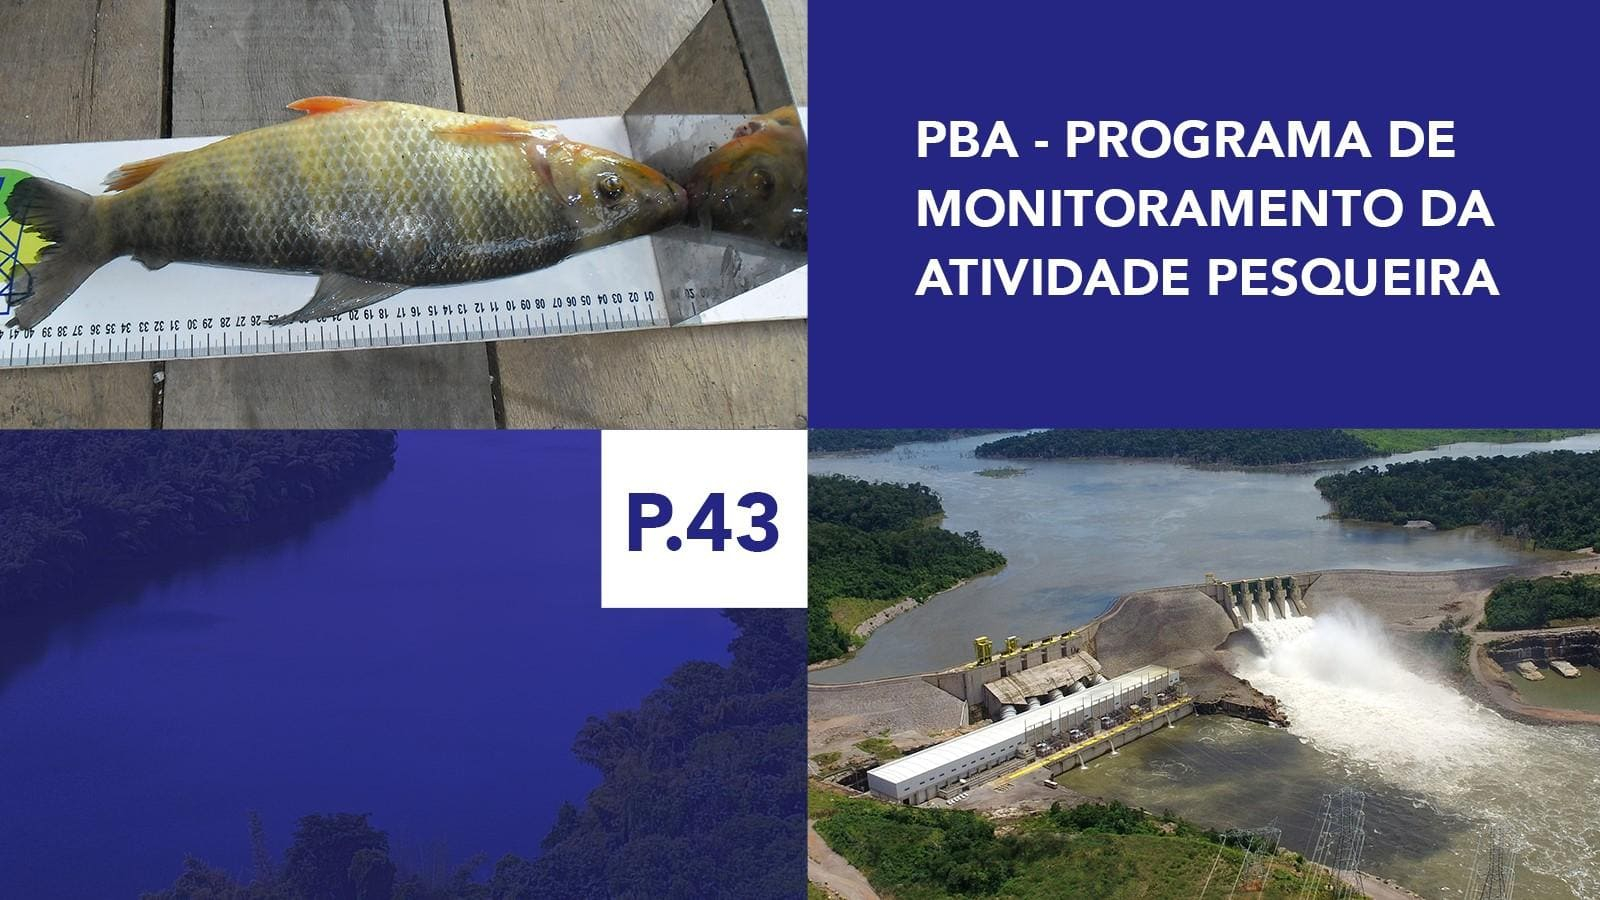 P.43 - Programa de Monitoramento da Atividade Pesqueira